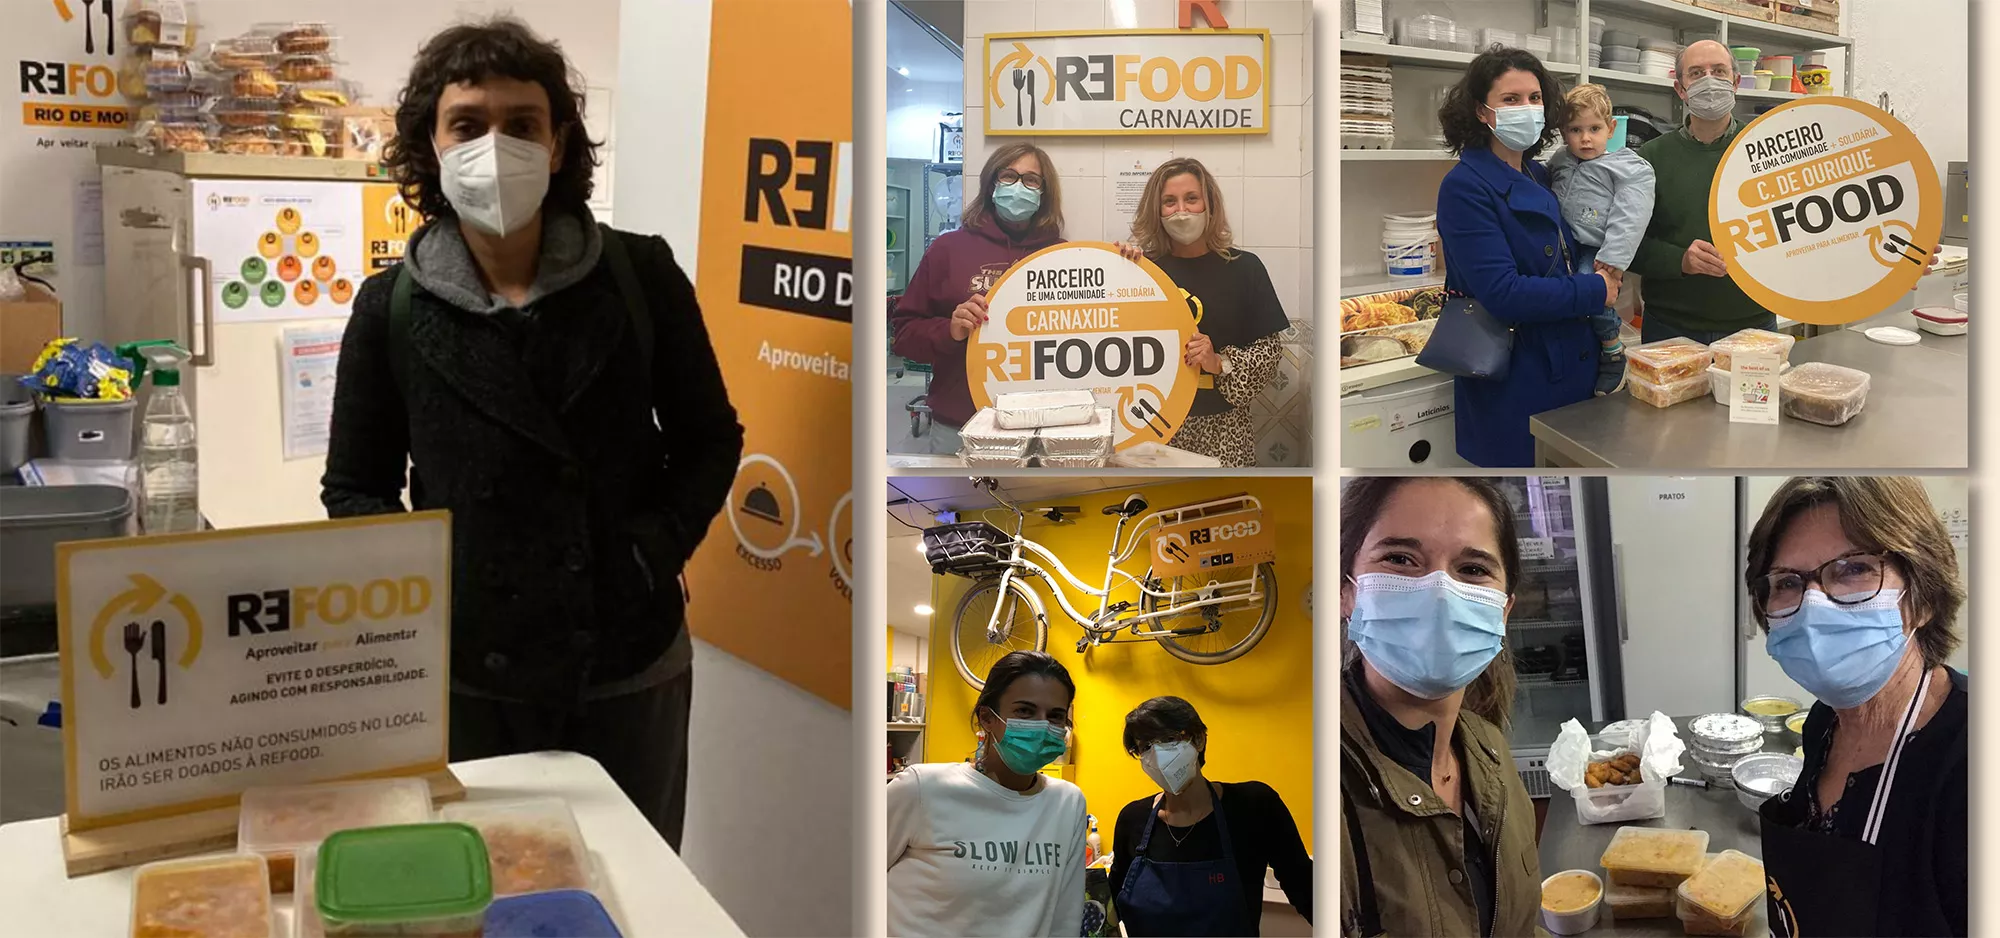 Colaboradores da Novartis Portugal entregam mais de 700 refeições na Refood, de norte a sul do país